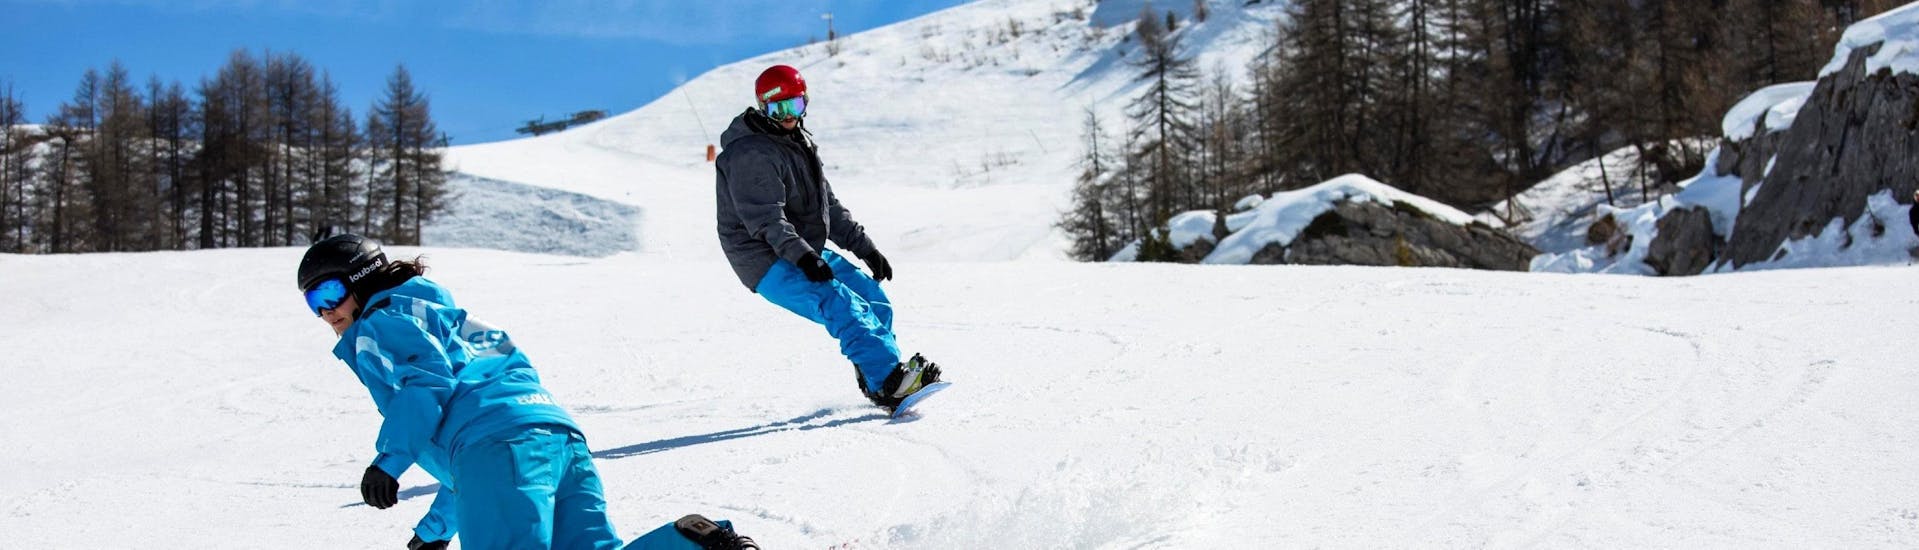 Privé snowboardlessen vanaf 8 jaar voor alle niveaus.